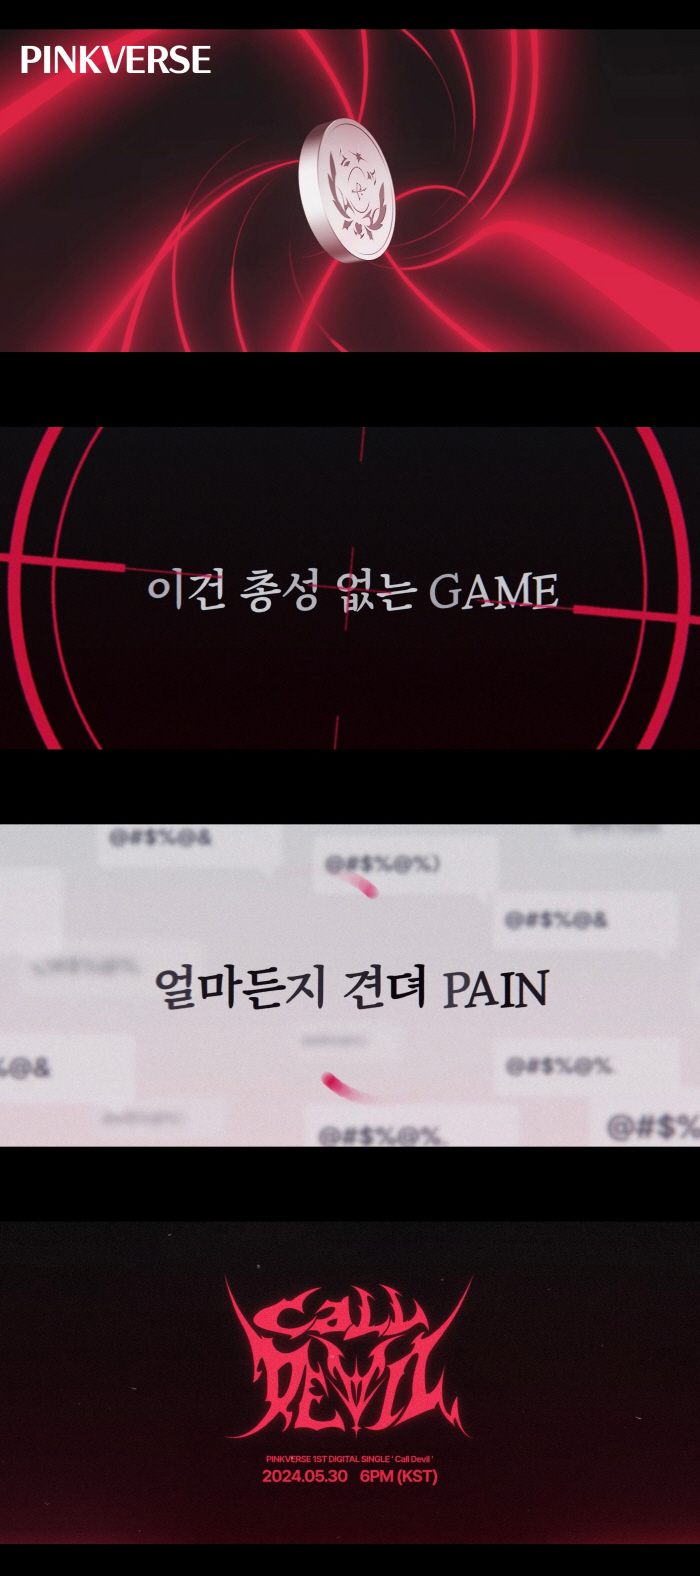 '버추얼 걸그룹' 핑크버스, 30일 'Call Devil'로 데뷔…리릭 스포일러 공개